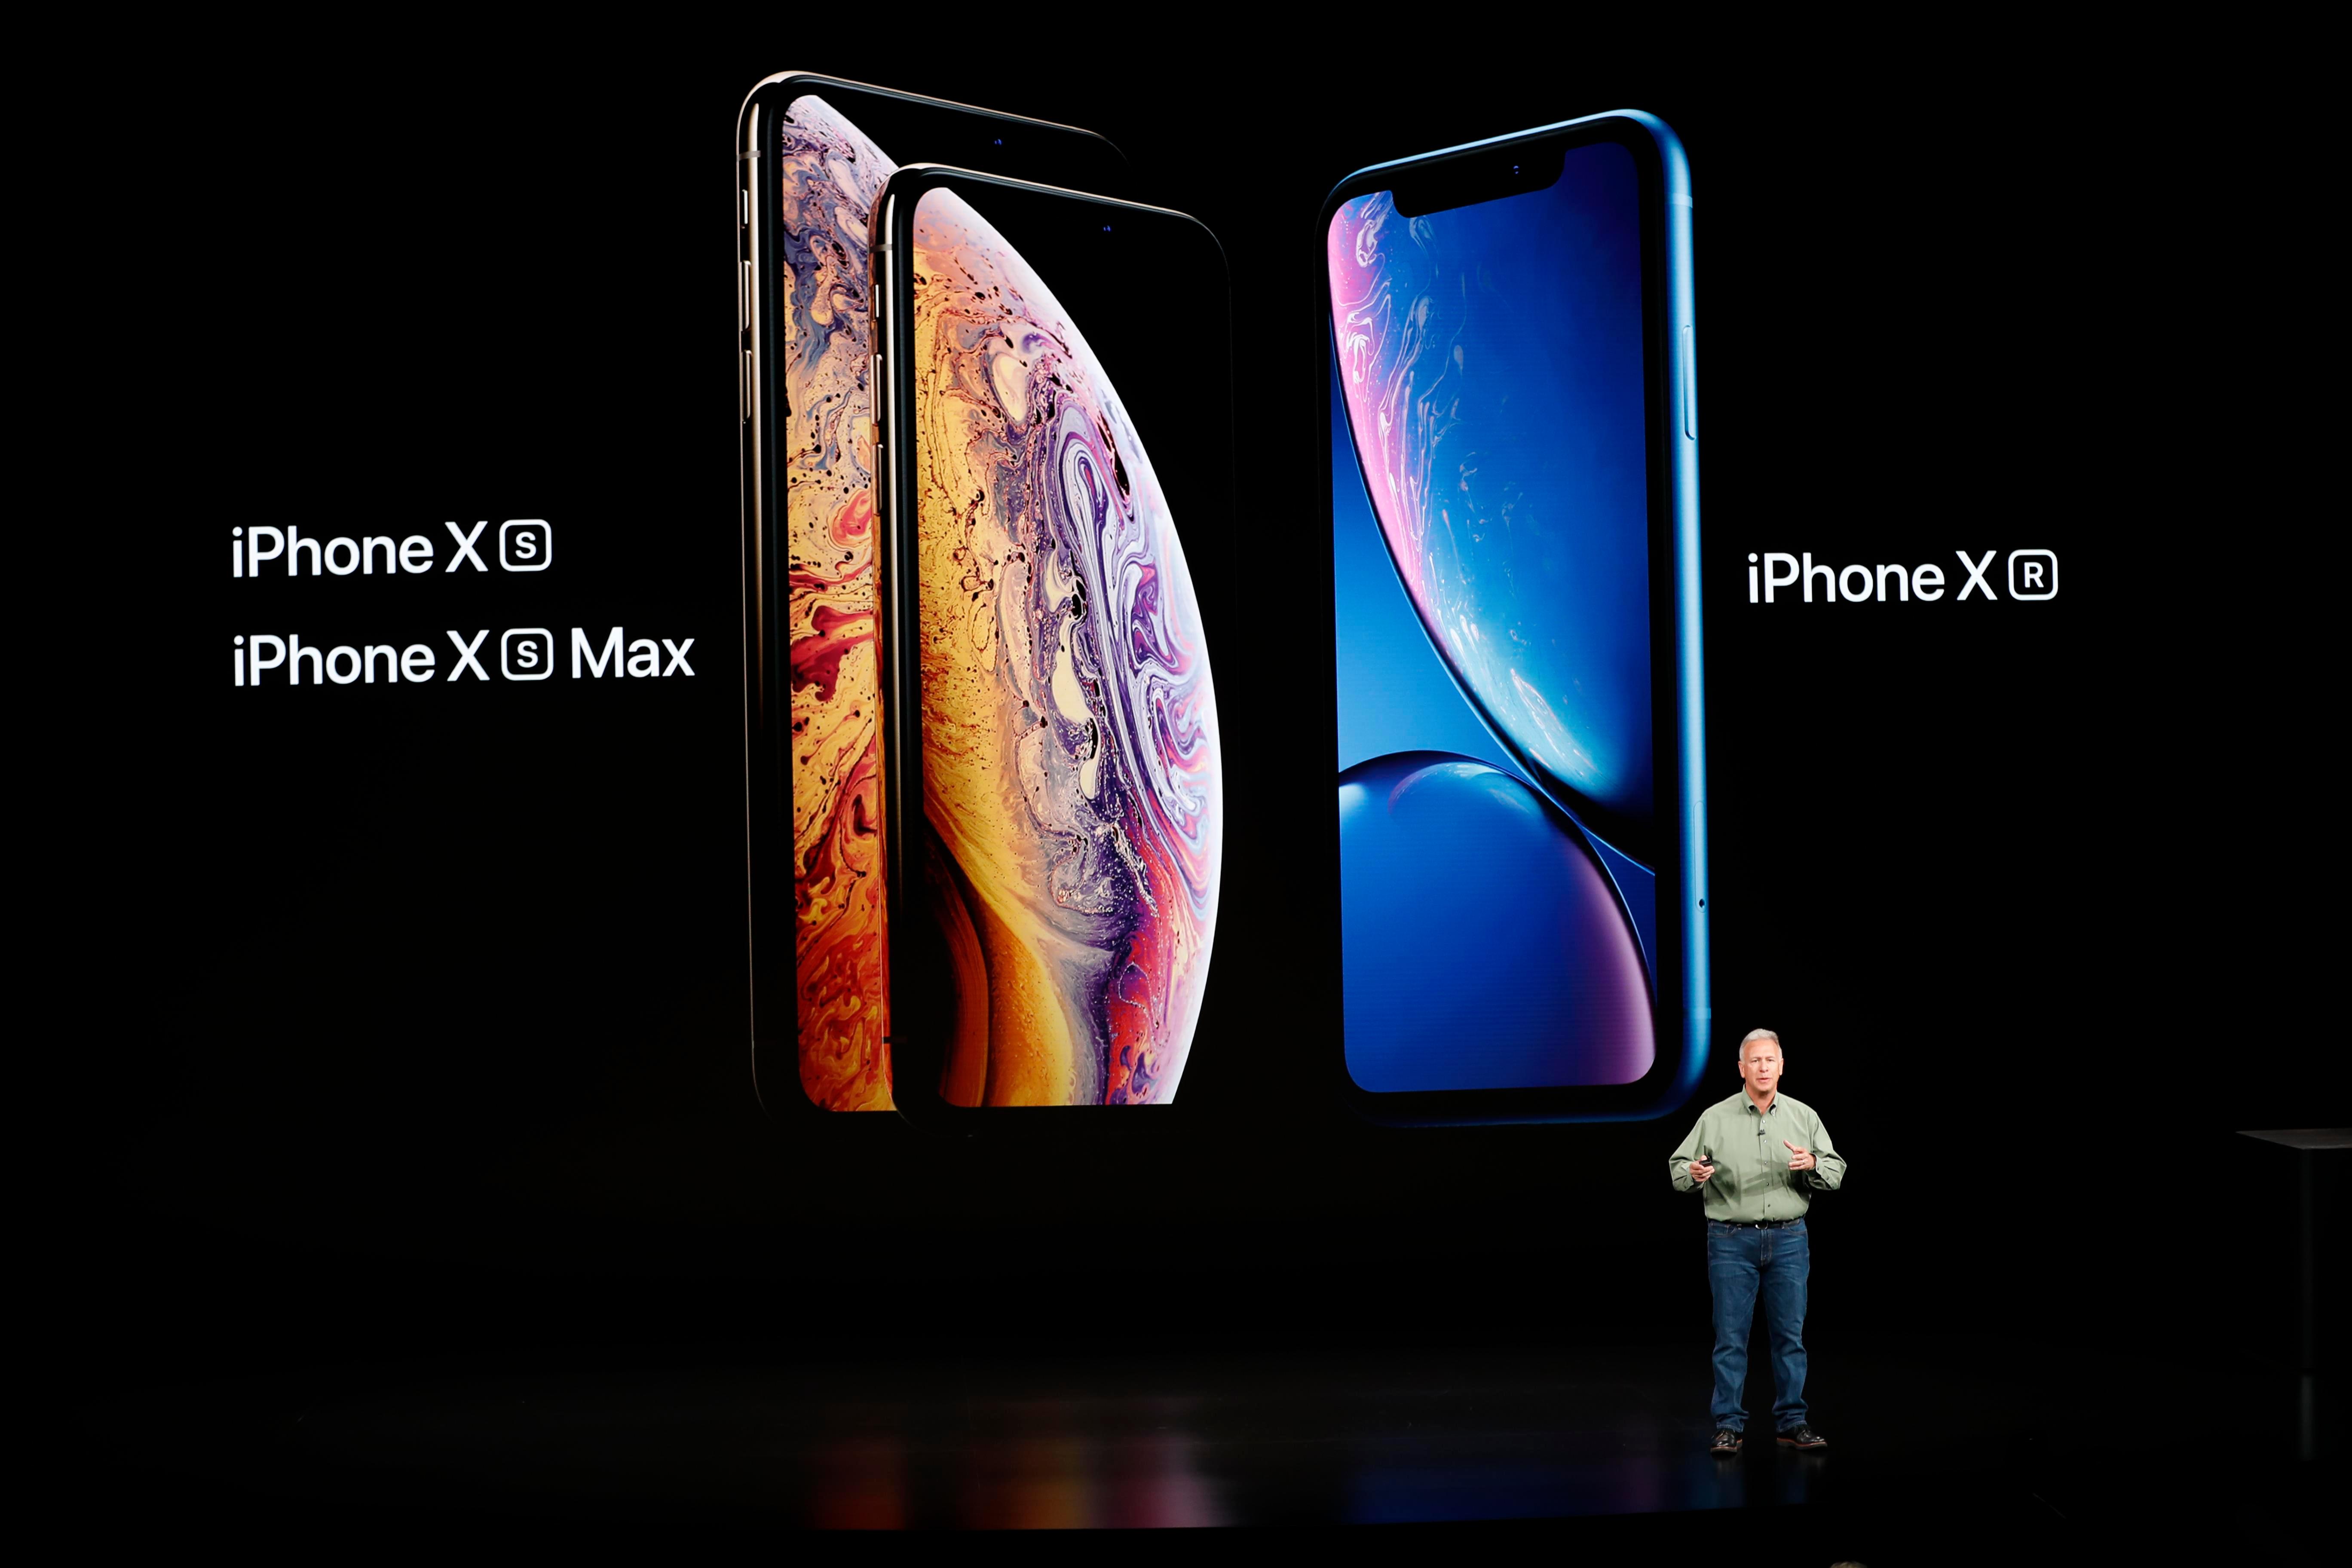         العام الماضي Apple شهدت الأحداث تقديم ثلاثة طرازات iPhone جديدة